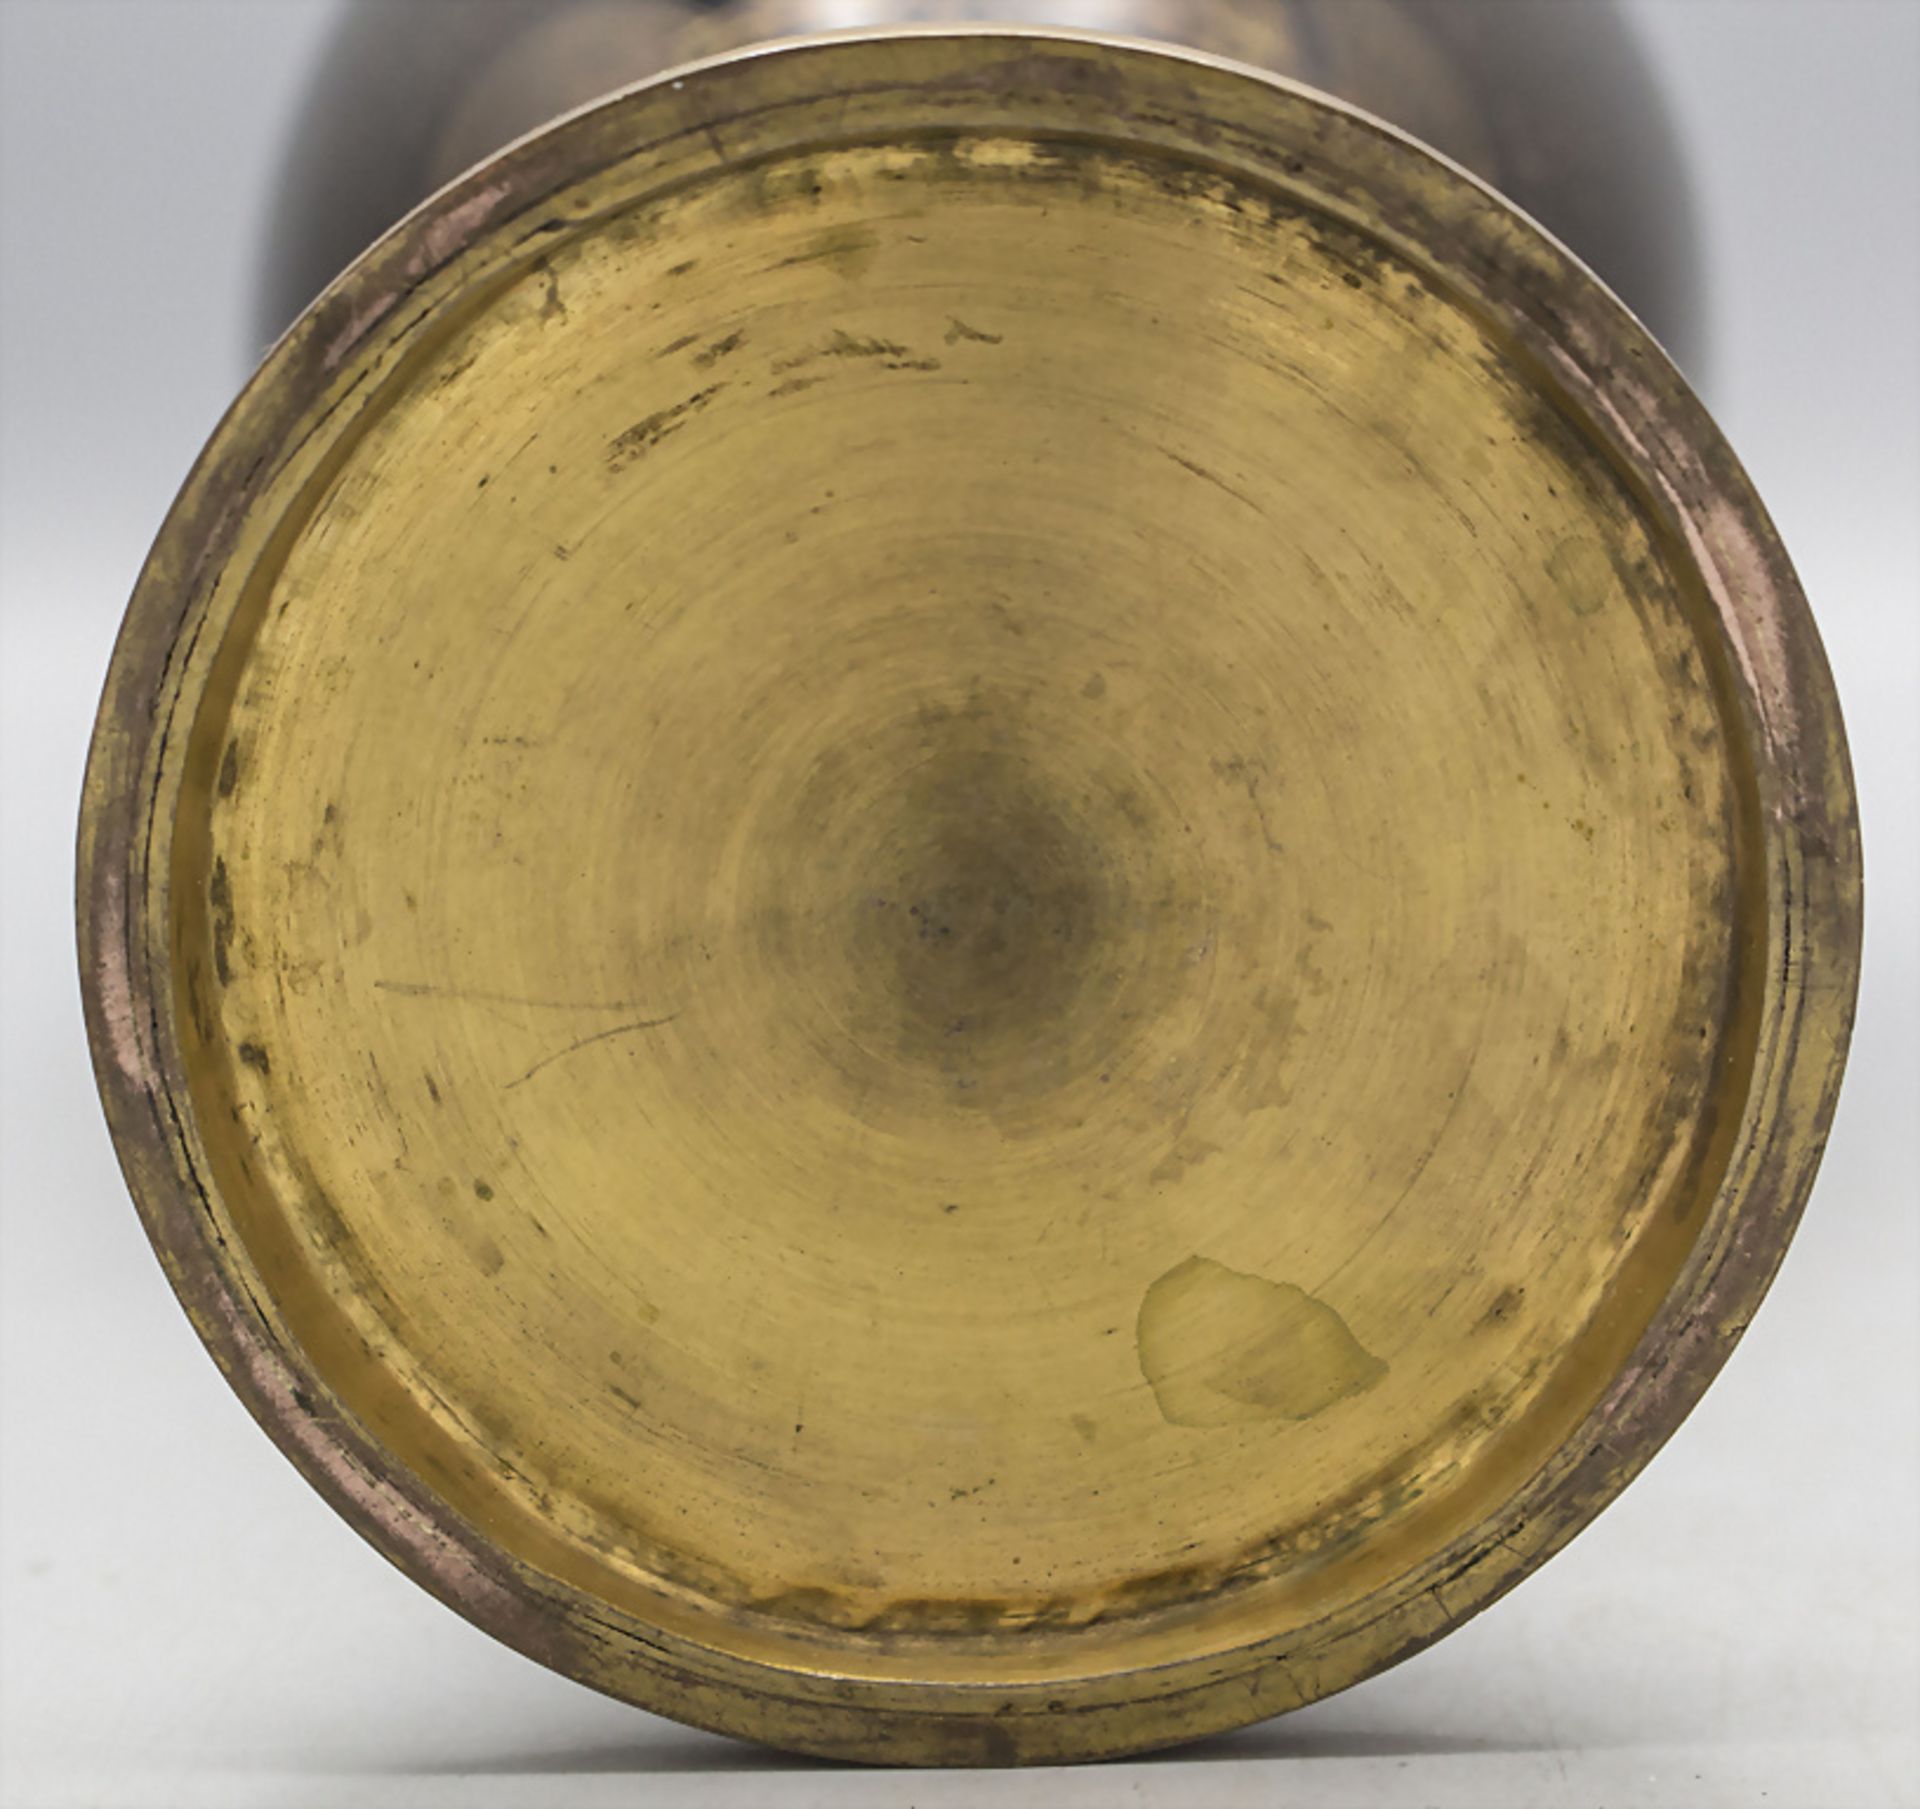 Cloisonné-Deckelvase / A cloisonné lidded vase, China, späte Qing Dynastie (1644-1911) - Image 5 of 6